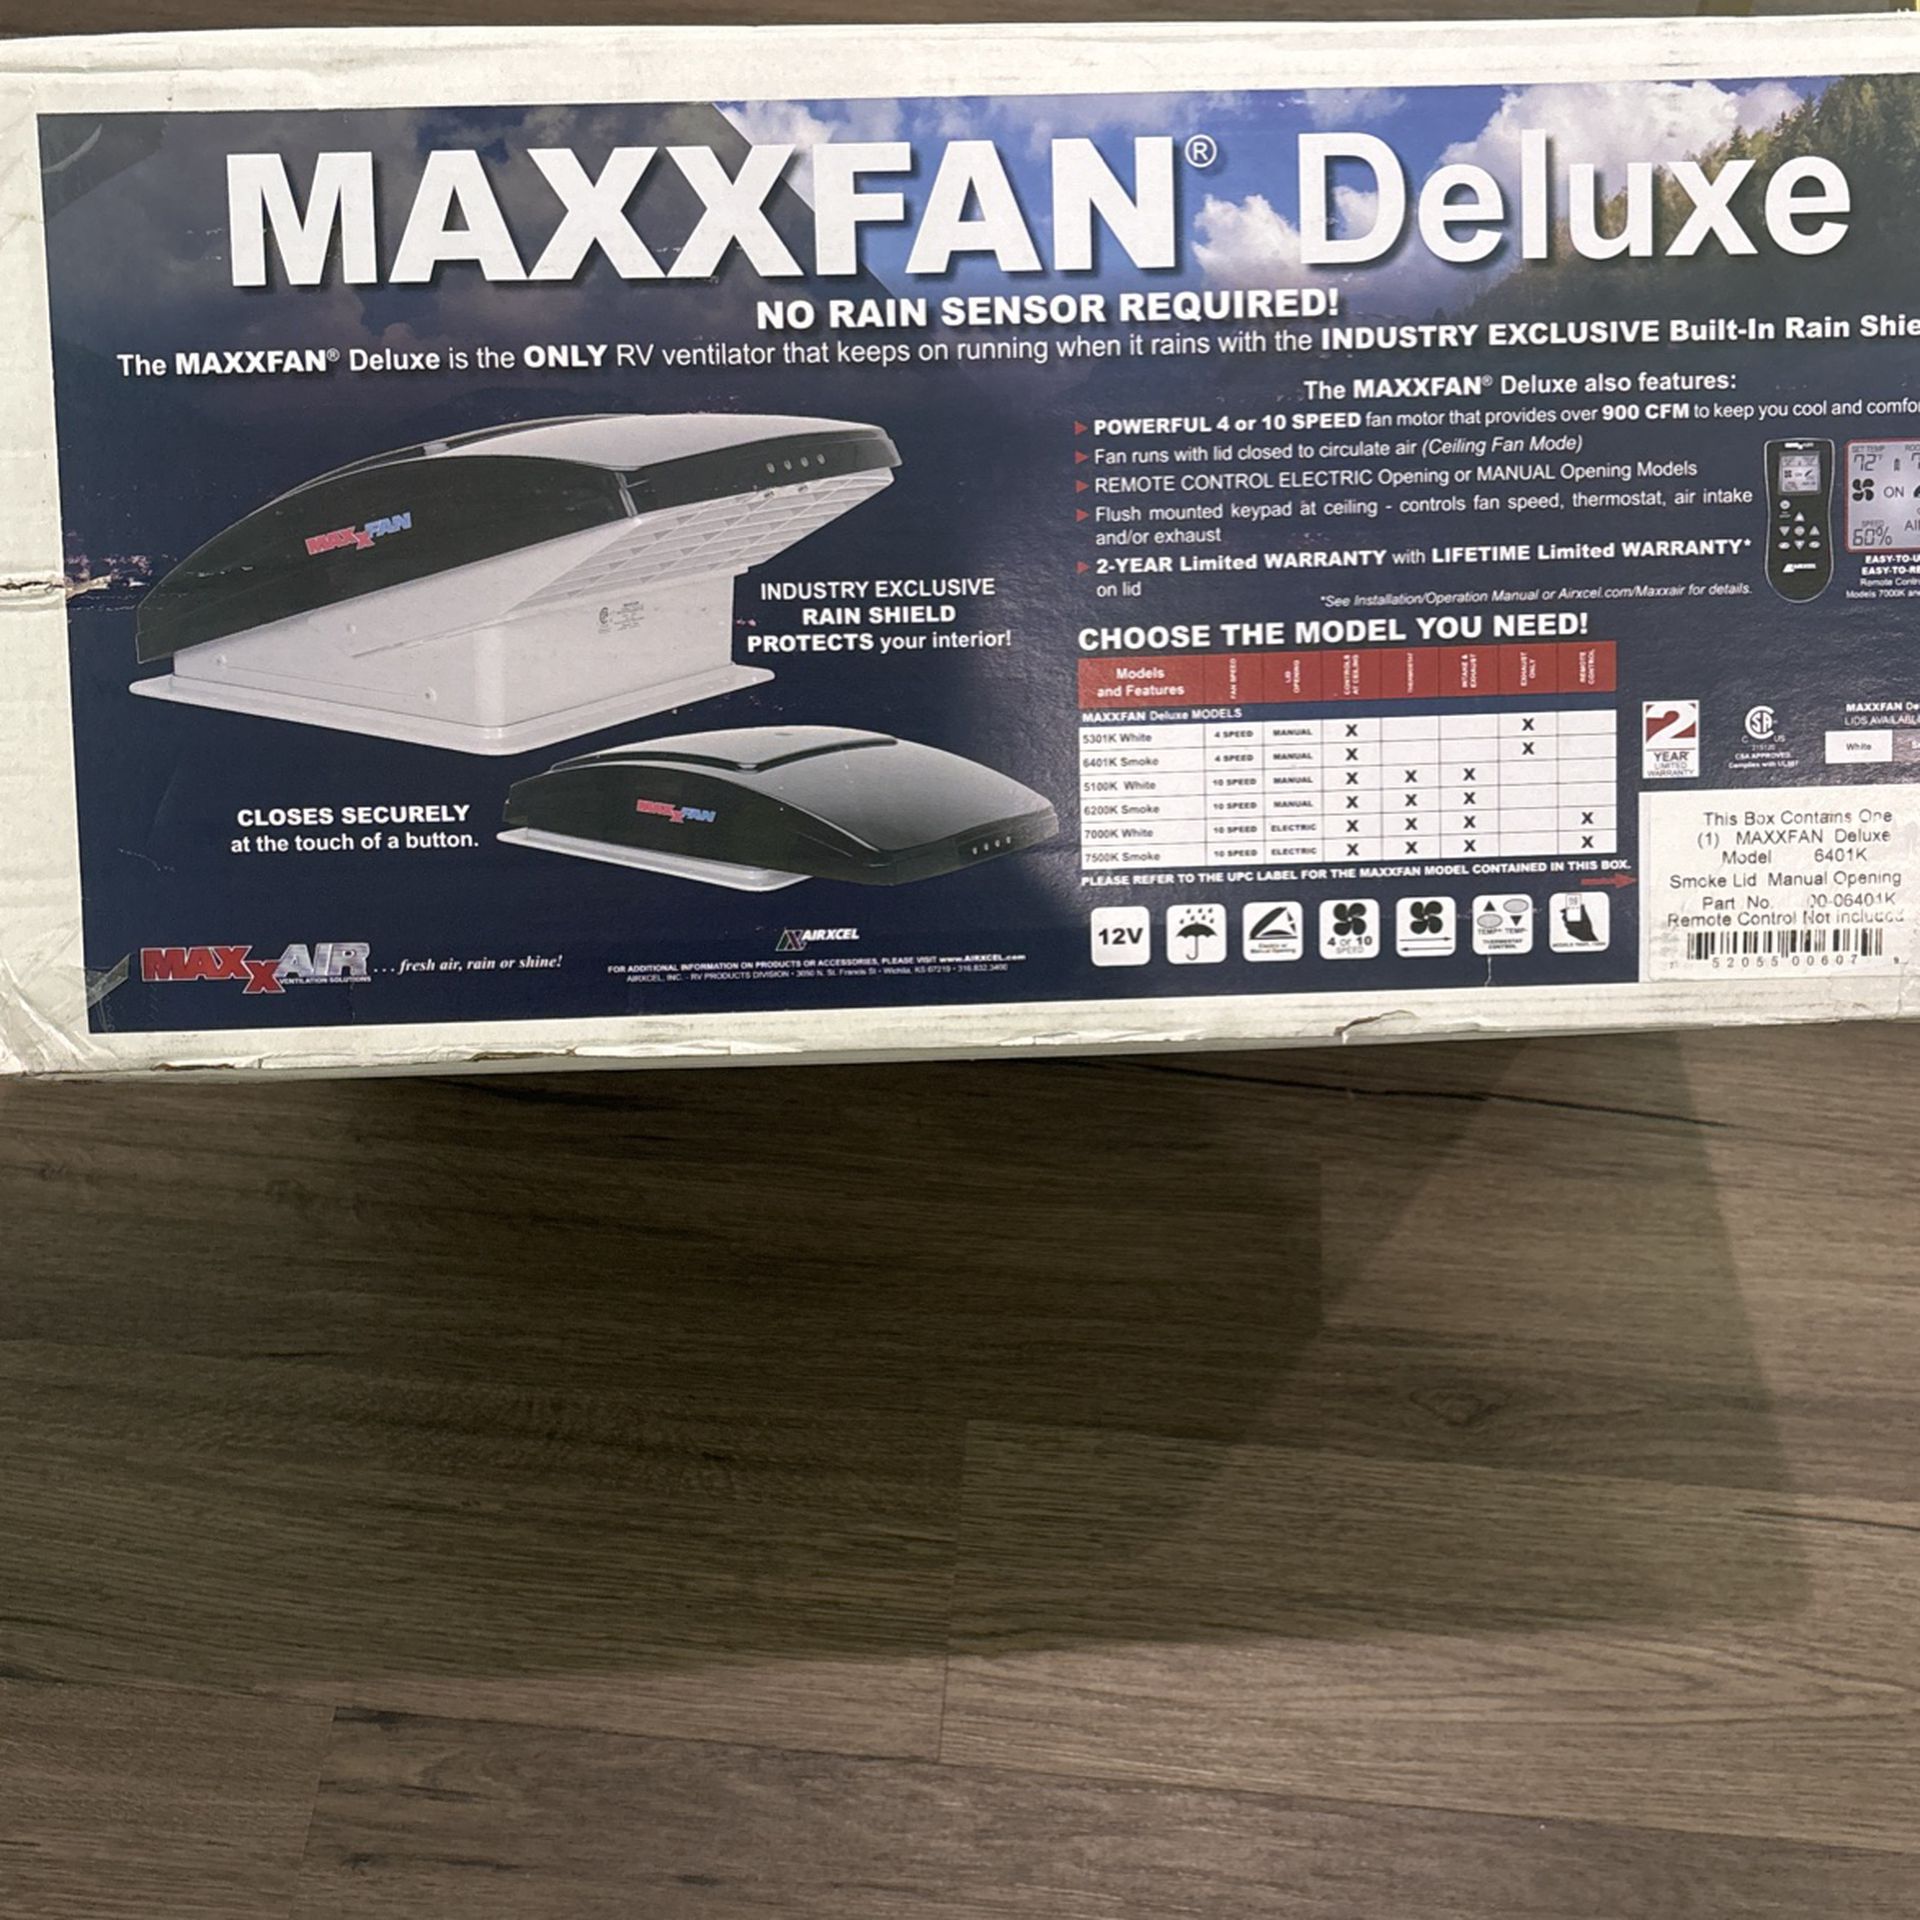 MAXXFAN deluxe Model 6401K